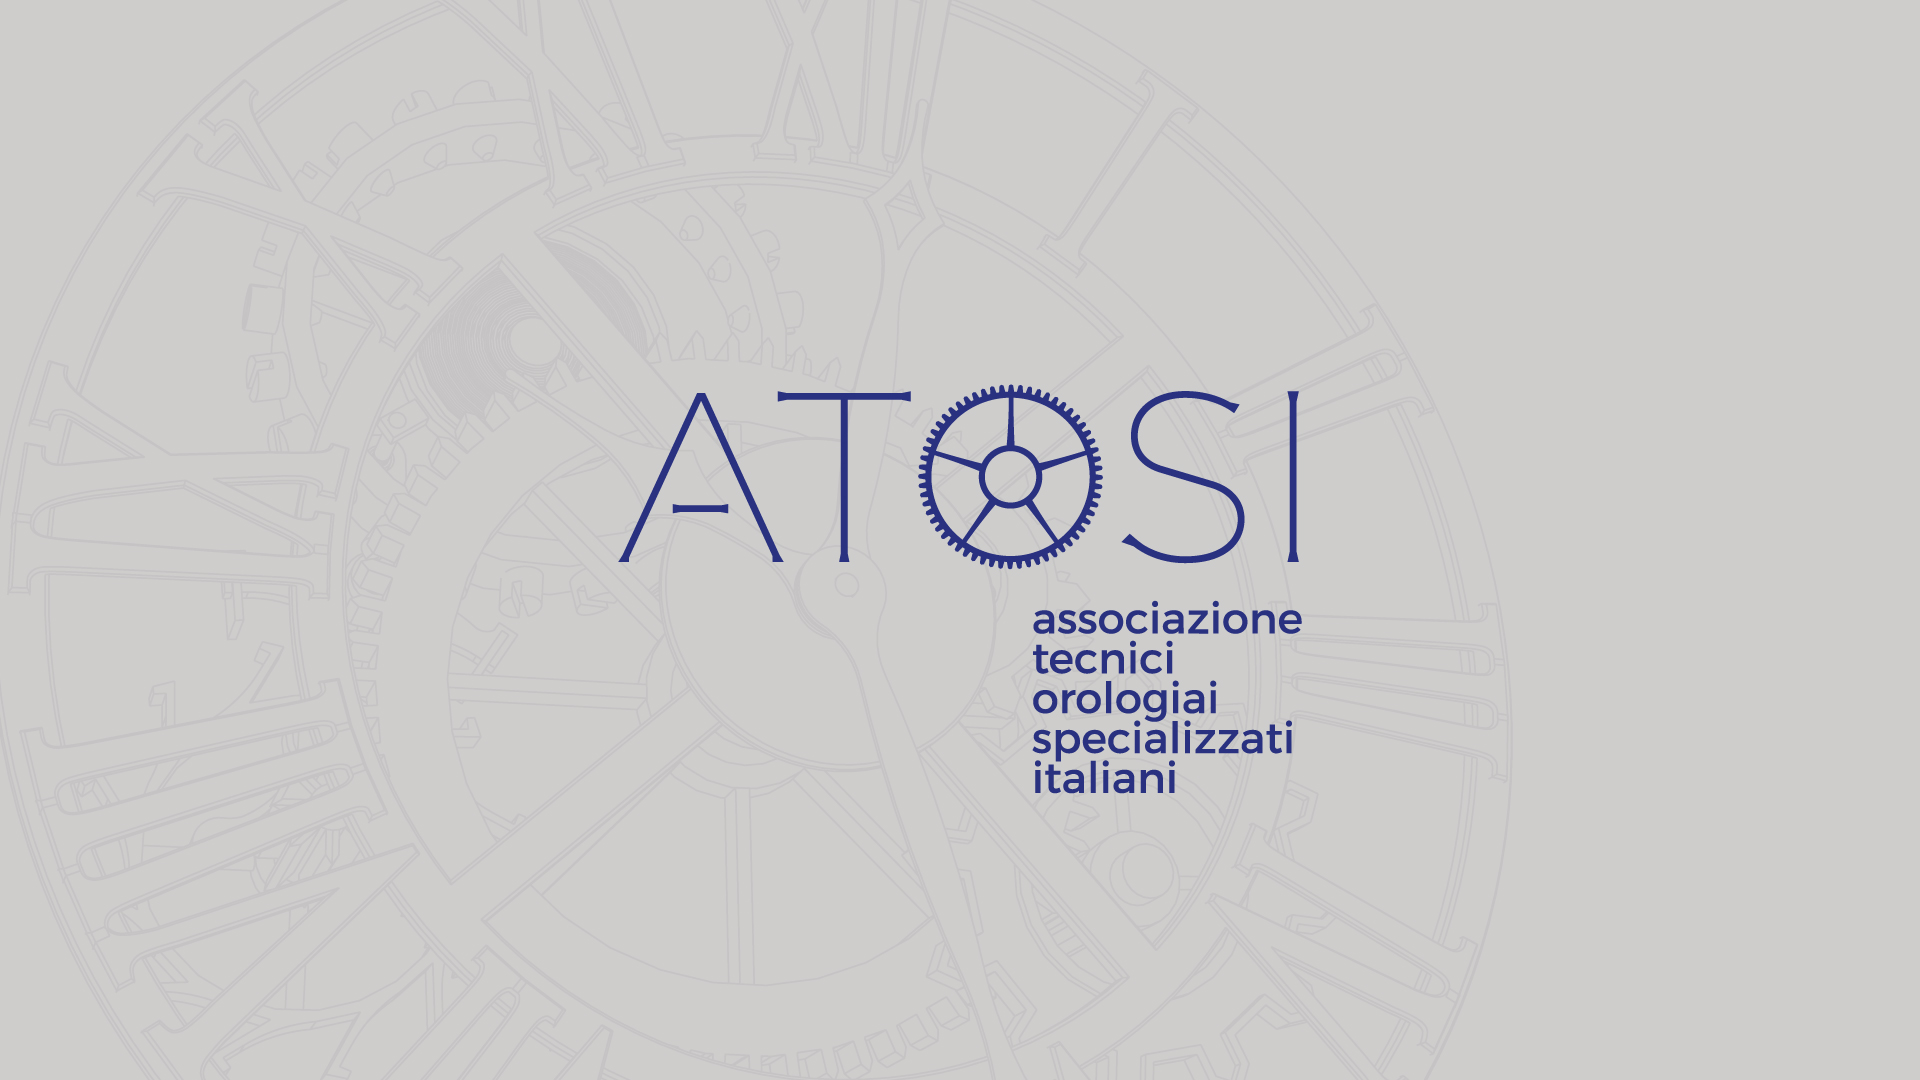 ATOSI - ASSOCIAZIONE TECNICI OROLOGIAI SPECIALIZZATI ITALIANI